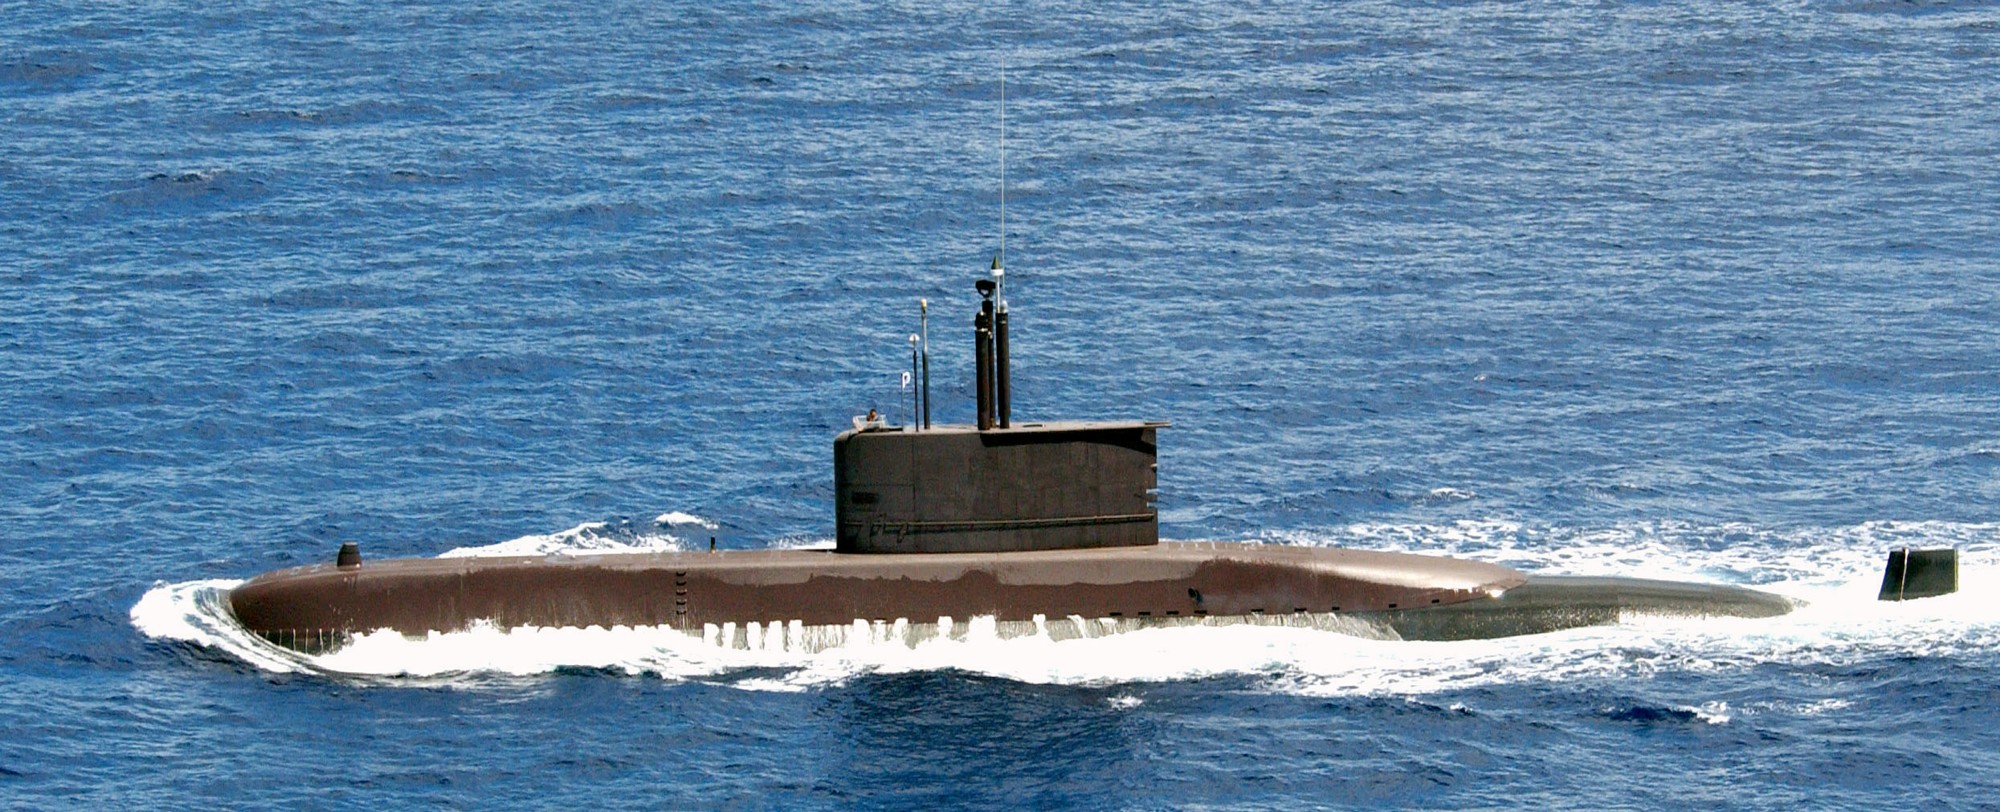 ss-061 roks jang bogo class attack submarine ss republic of korea navy rokn 533mm sut torpedo ugm-84 harpoon ssm missile 02